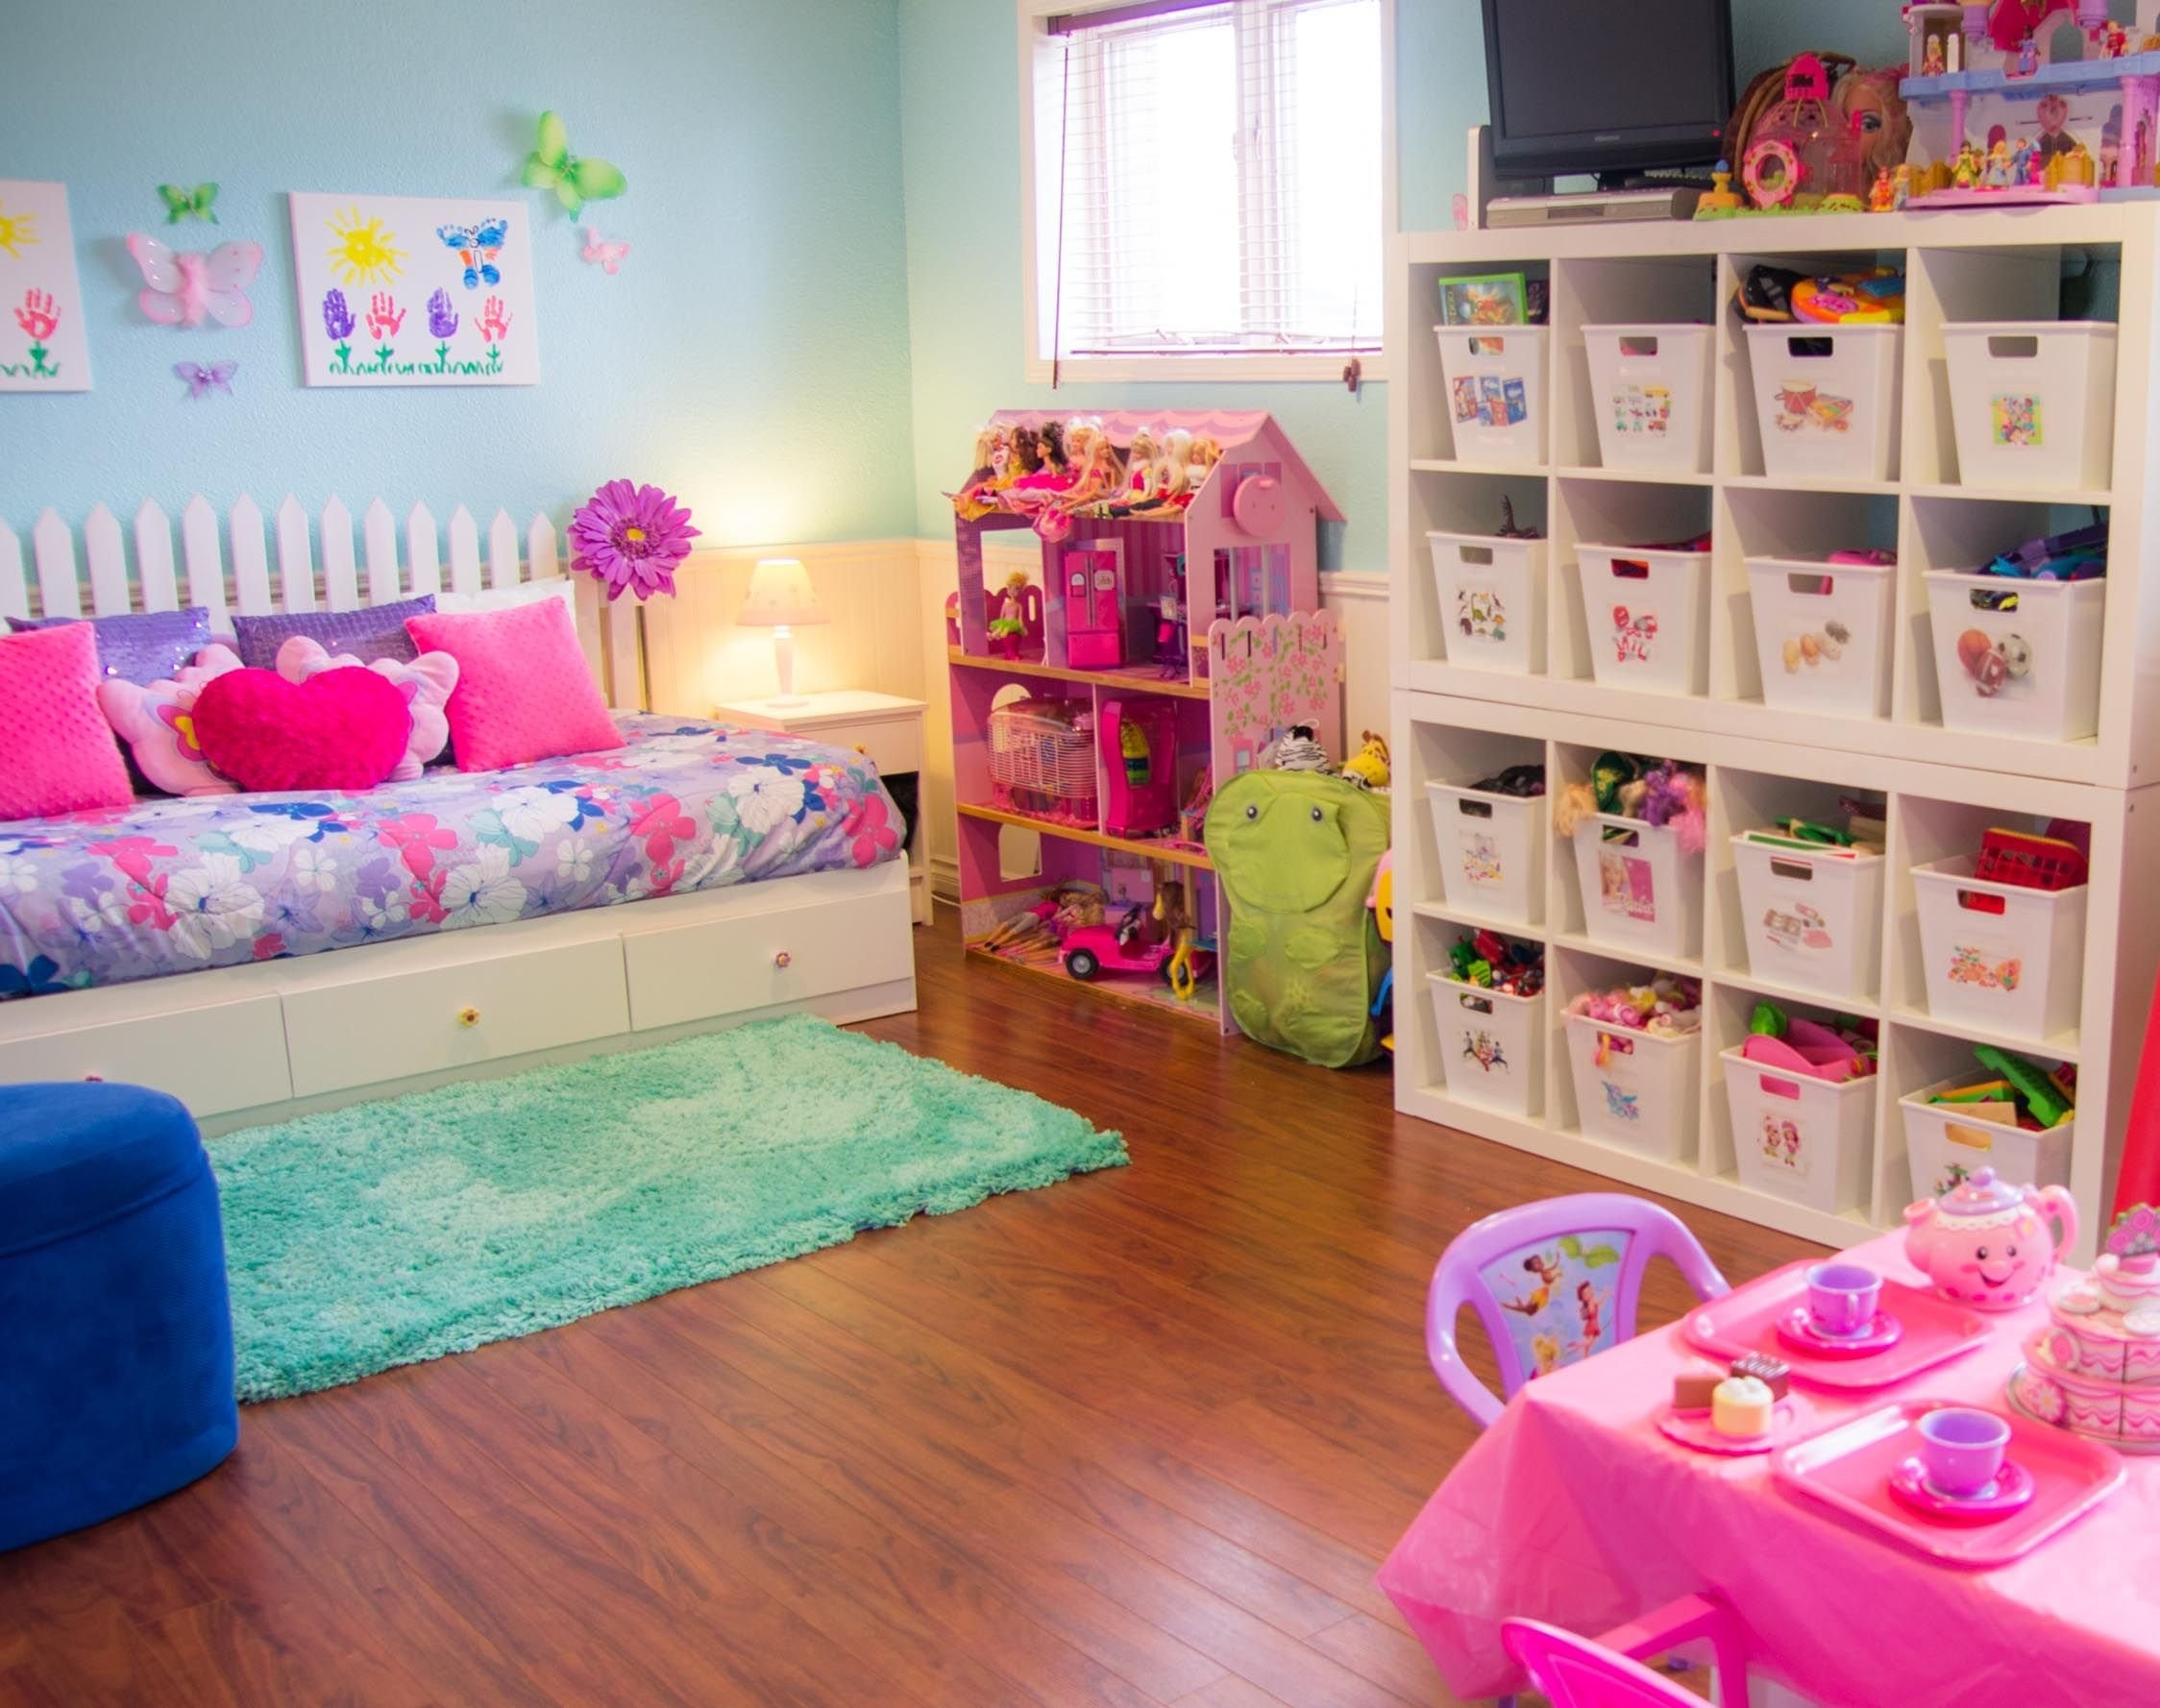 Bedroom toys. Порядок в детской комнате. Детская комната с игрушками. Игровая комната для девочек. Порядок в комнате ребенка.